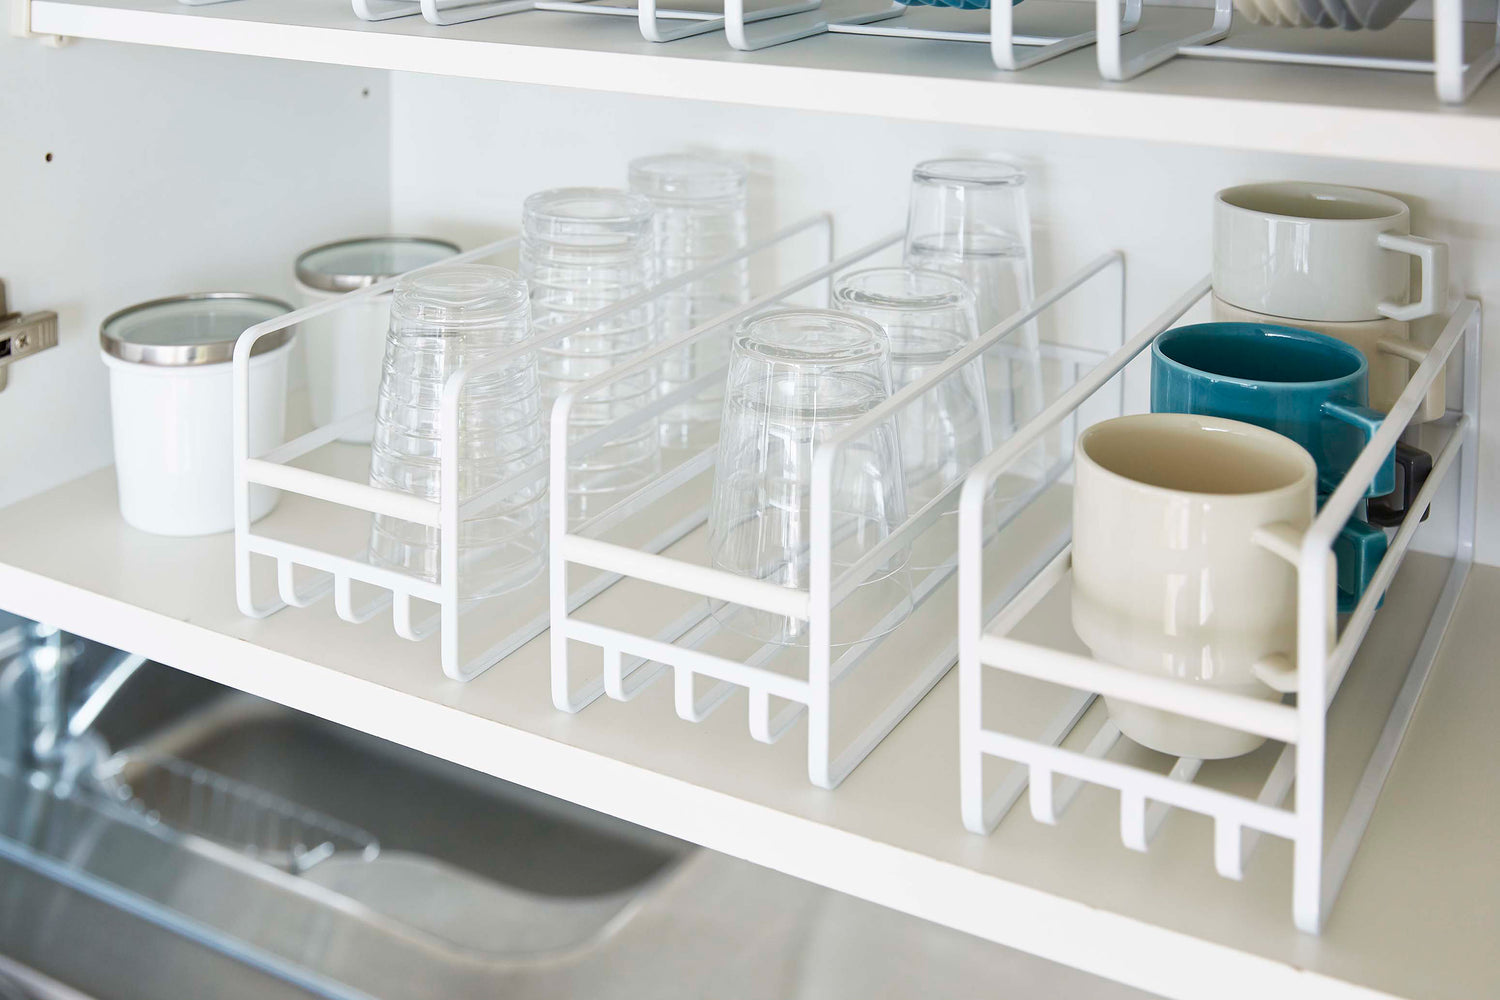 View 5 - Close up of 3 Yamazaki Home white Glass and Mug Cabinet Organizers on a shelf